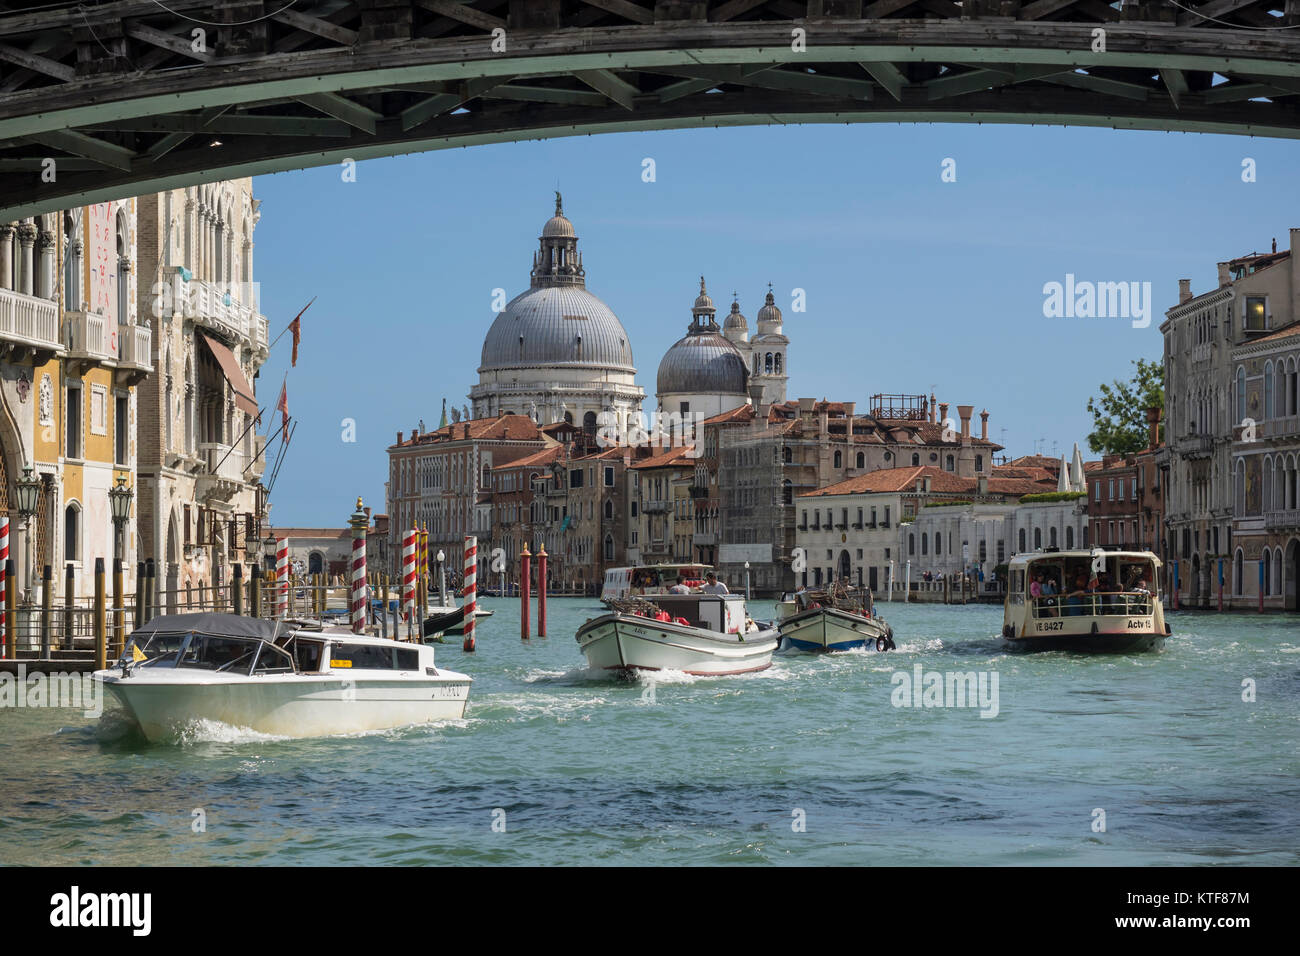 VENISE, ITALIE - 13 SEPTEMBRE 2017 : vue sur le Grand Canal jusqu'à la basilique de Santa Maria della Salute depuis le dessous du Ponte dell'Accademia Banque D'Images